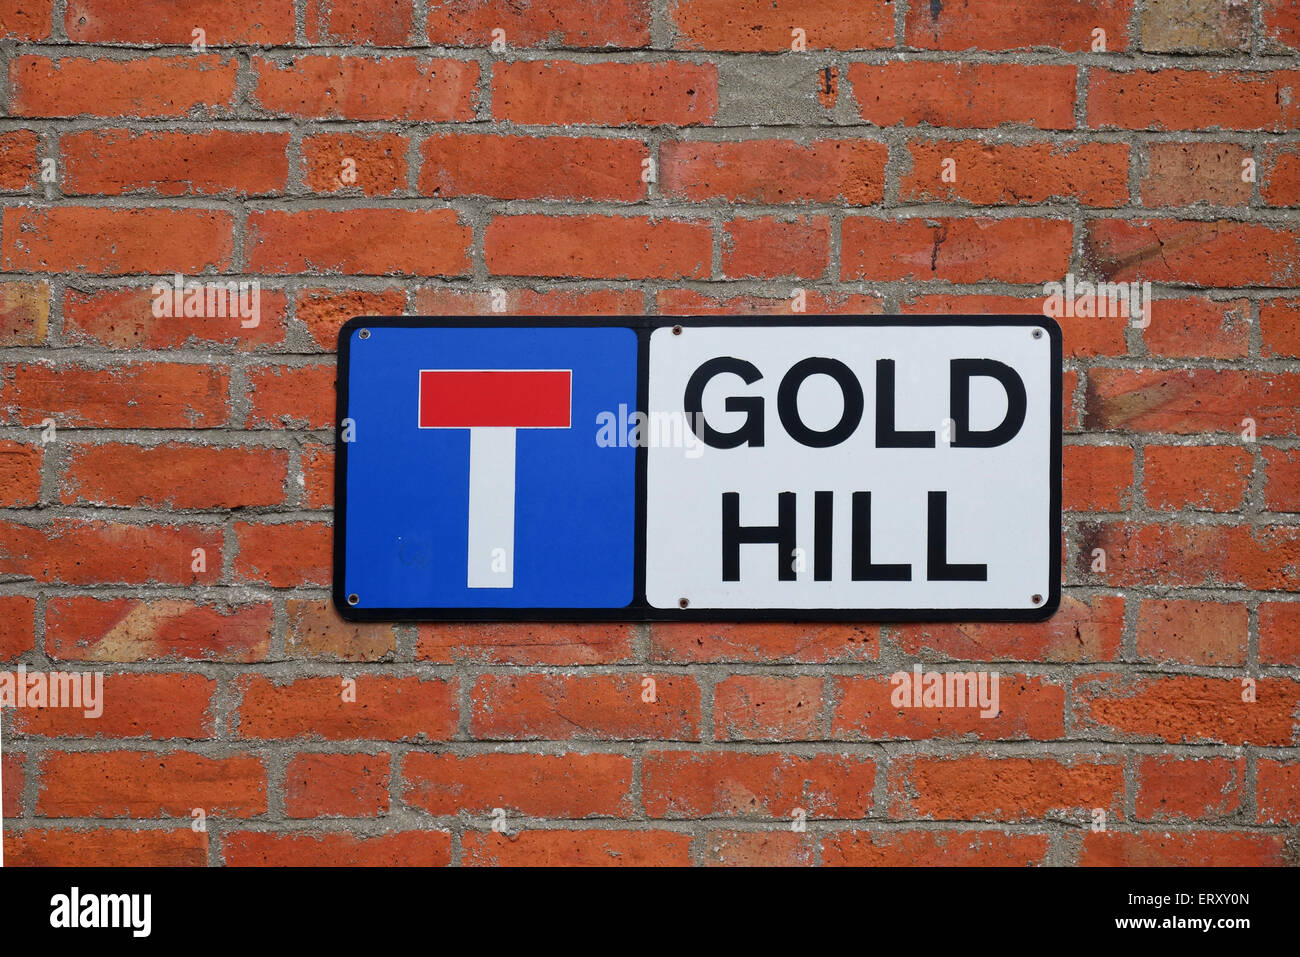 Gold Hill, Shaftesbury - berühmt für die Hovis-Werbung, Dorset, England, Großbritannien Stockfoto